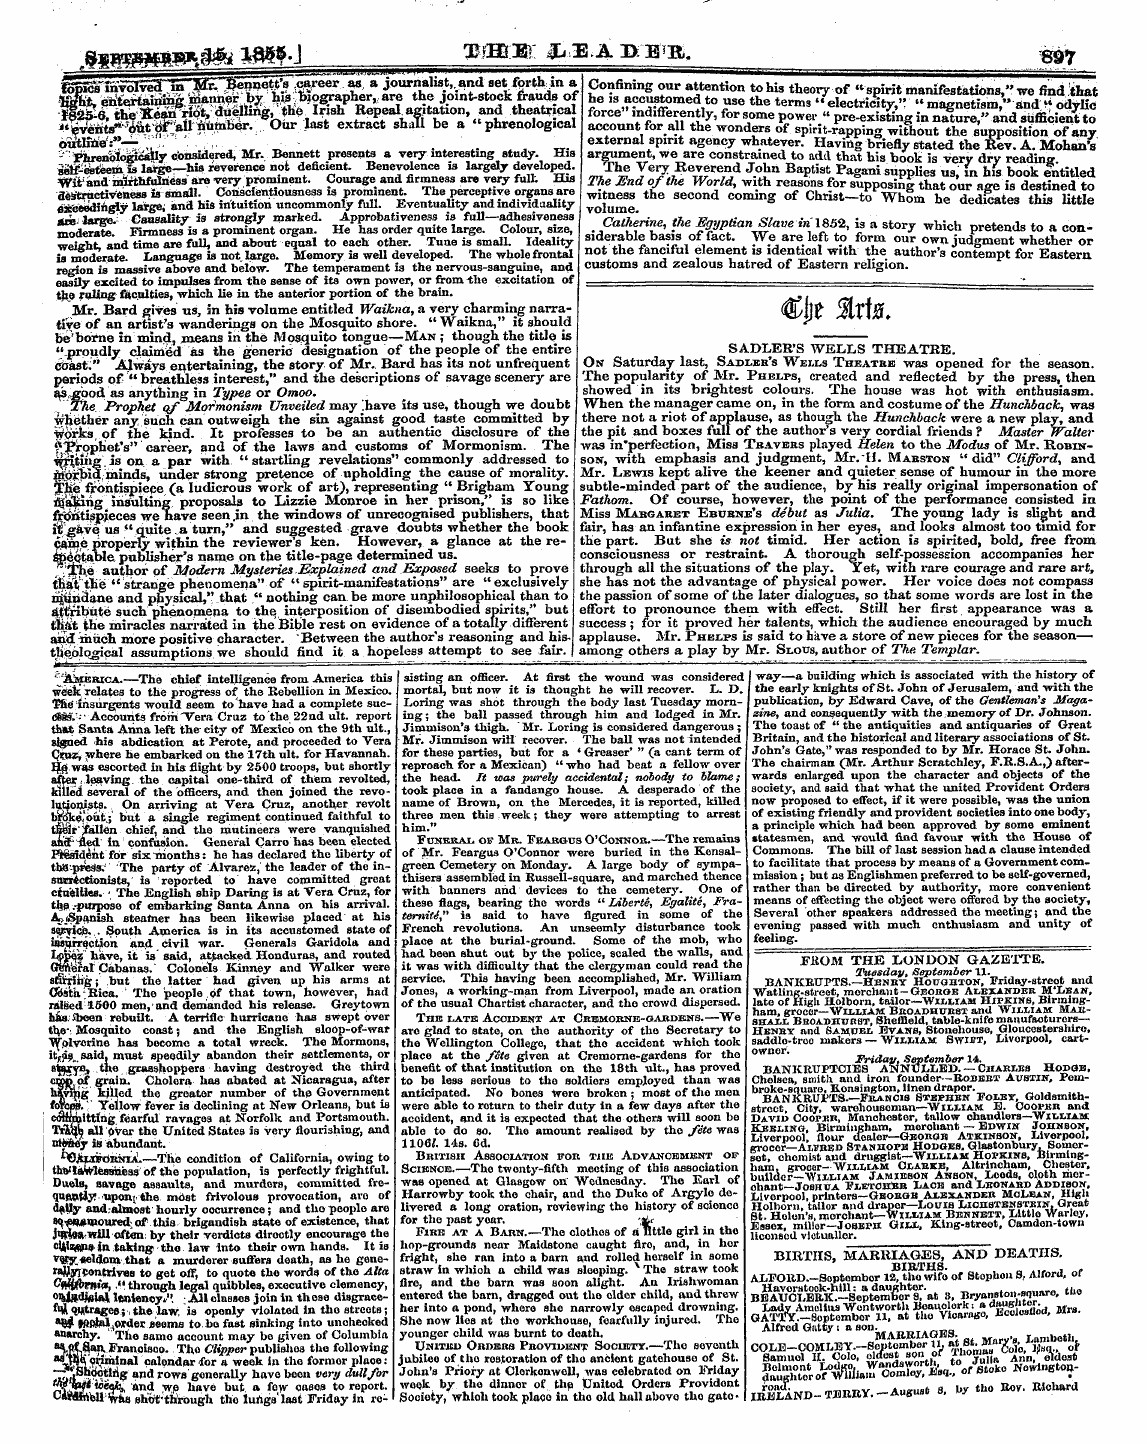 Leader (1850-1860): jS F Y, 2nd edition - ,8igb»«W^^ M>»-J- . W:Iiij.Abm J&R